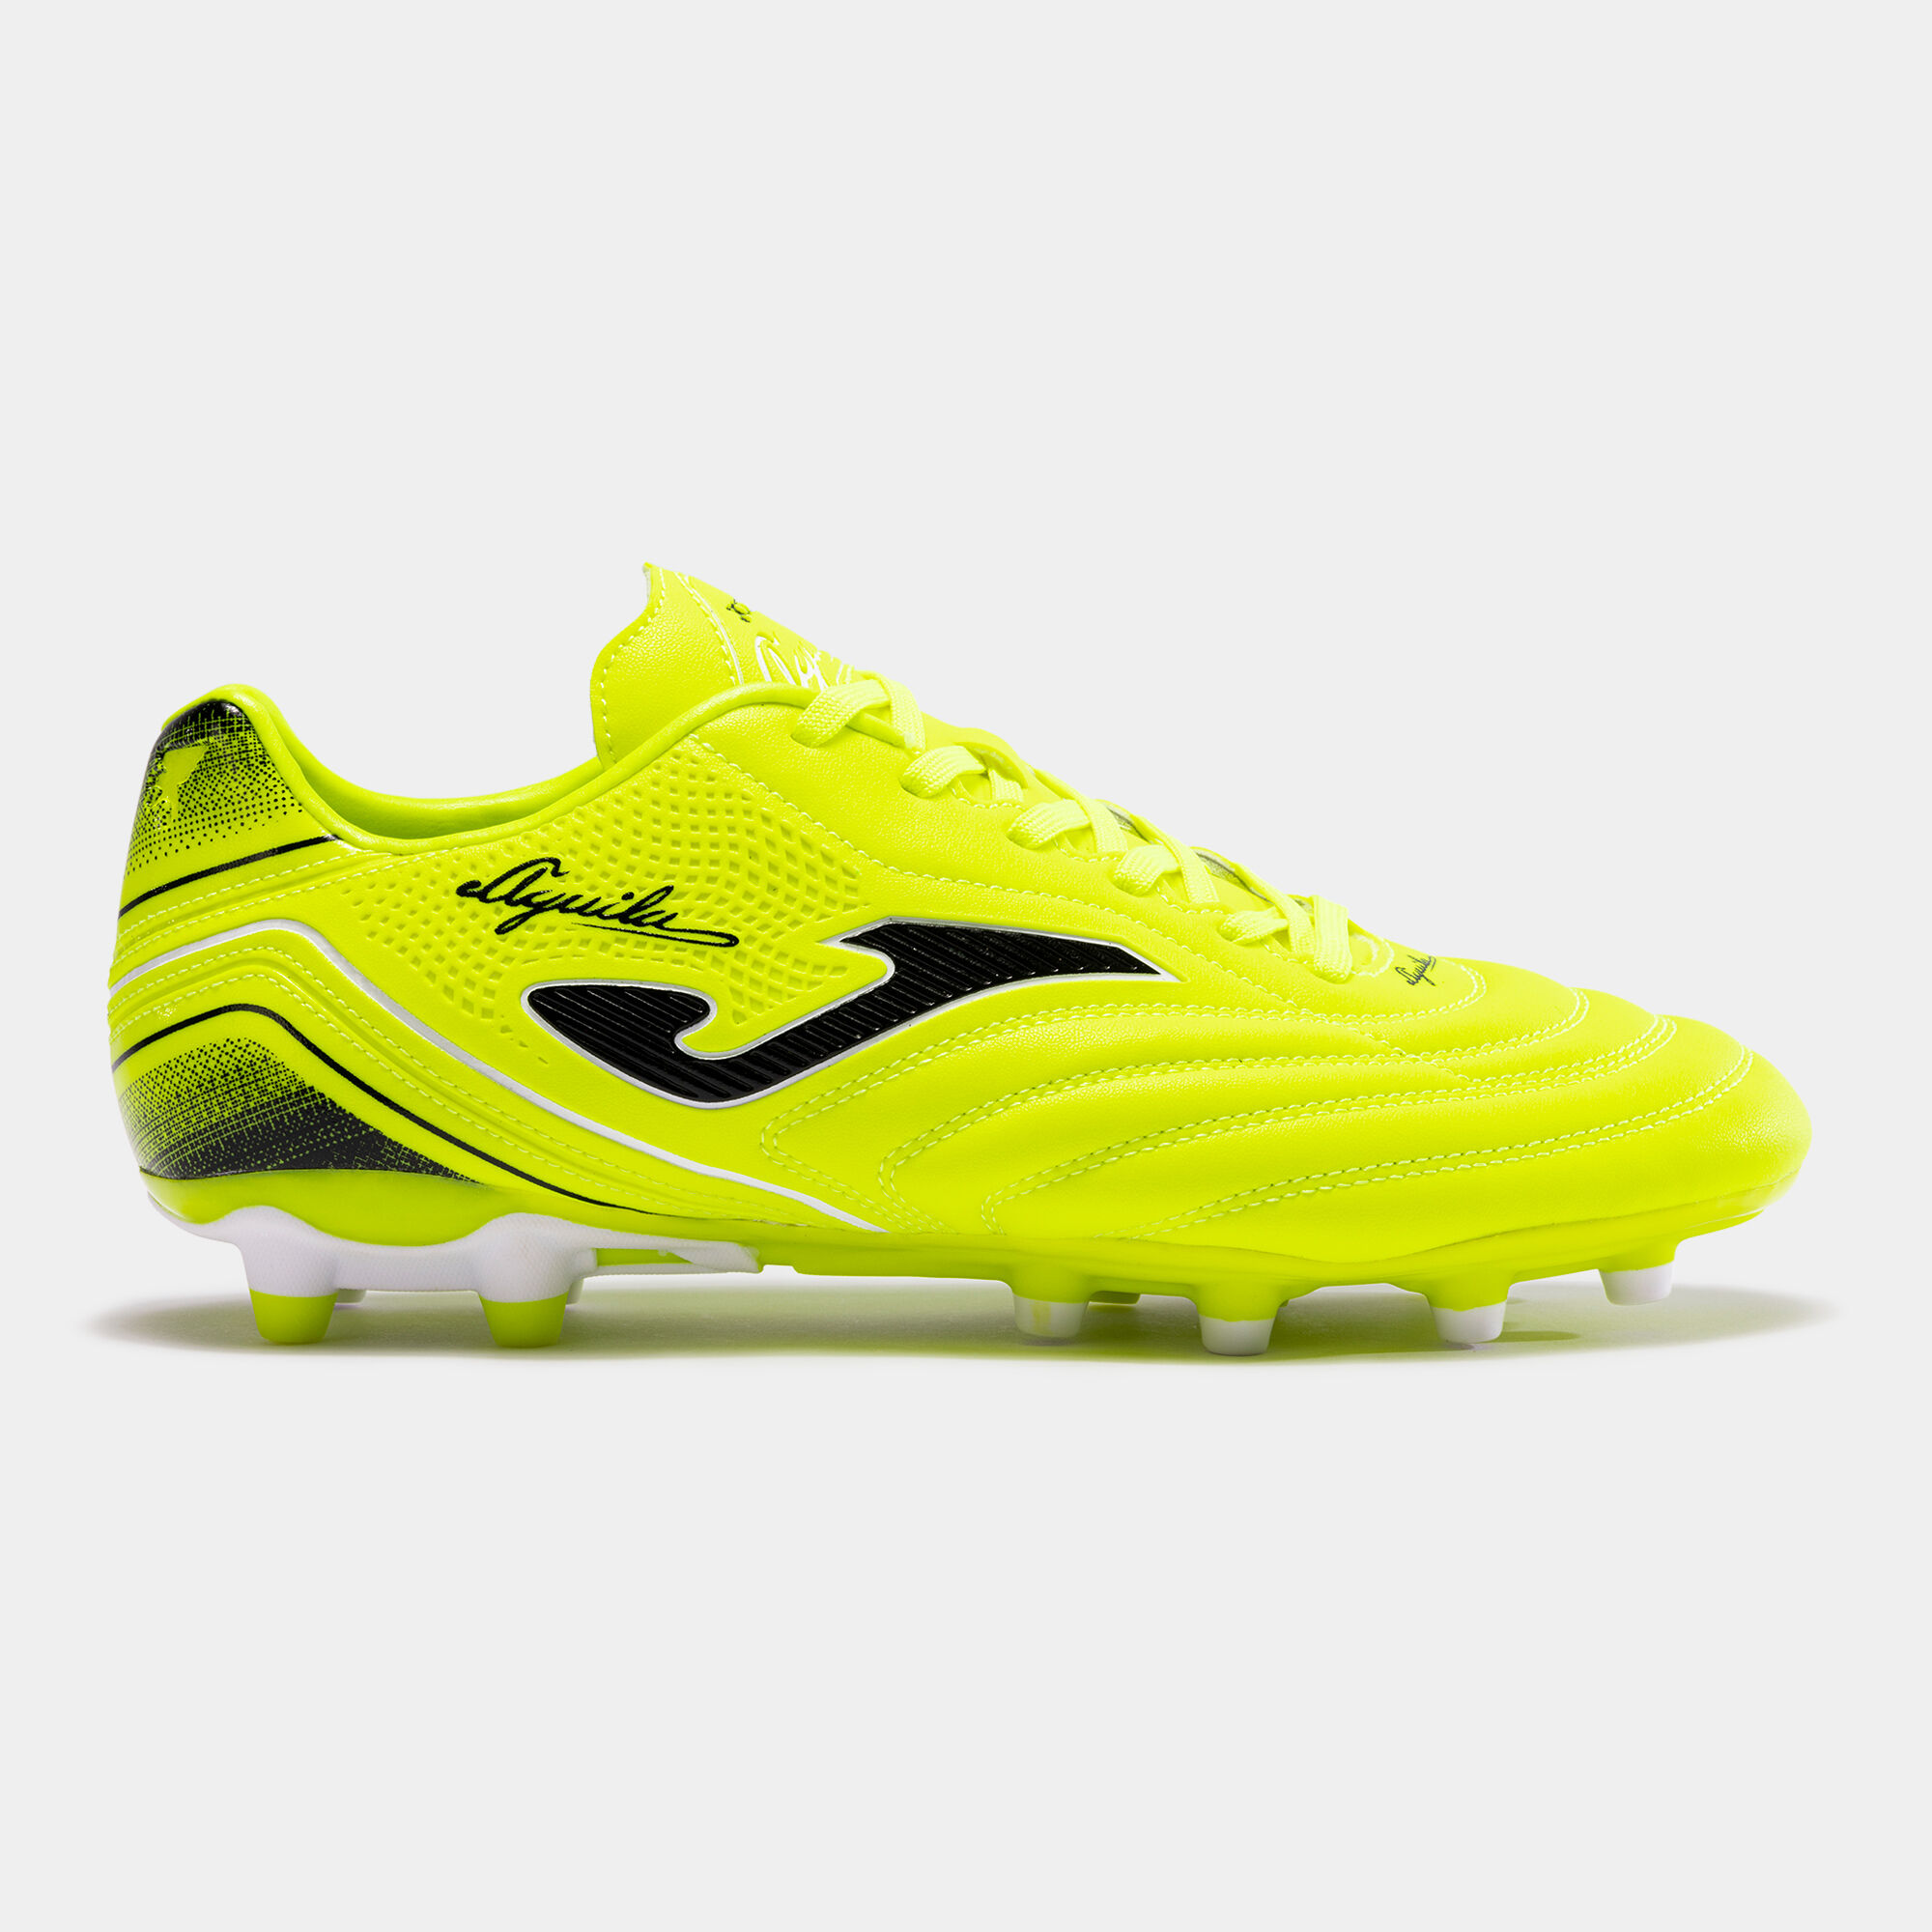 Chaussures football Aguila 24 terrain ferme FG jaune fluo